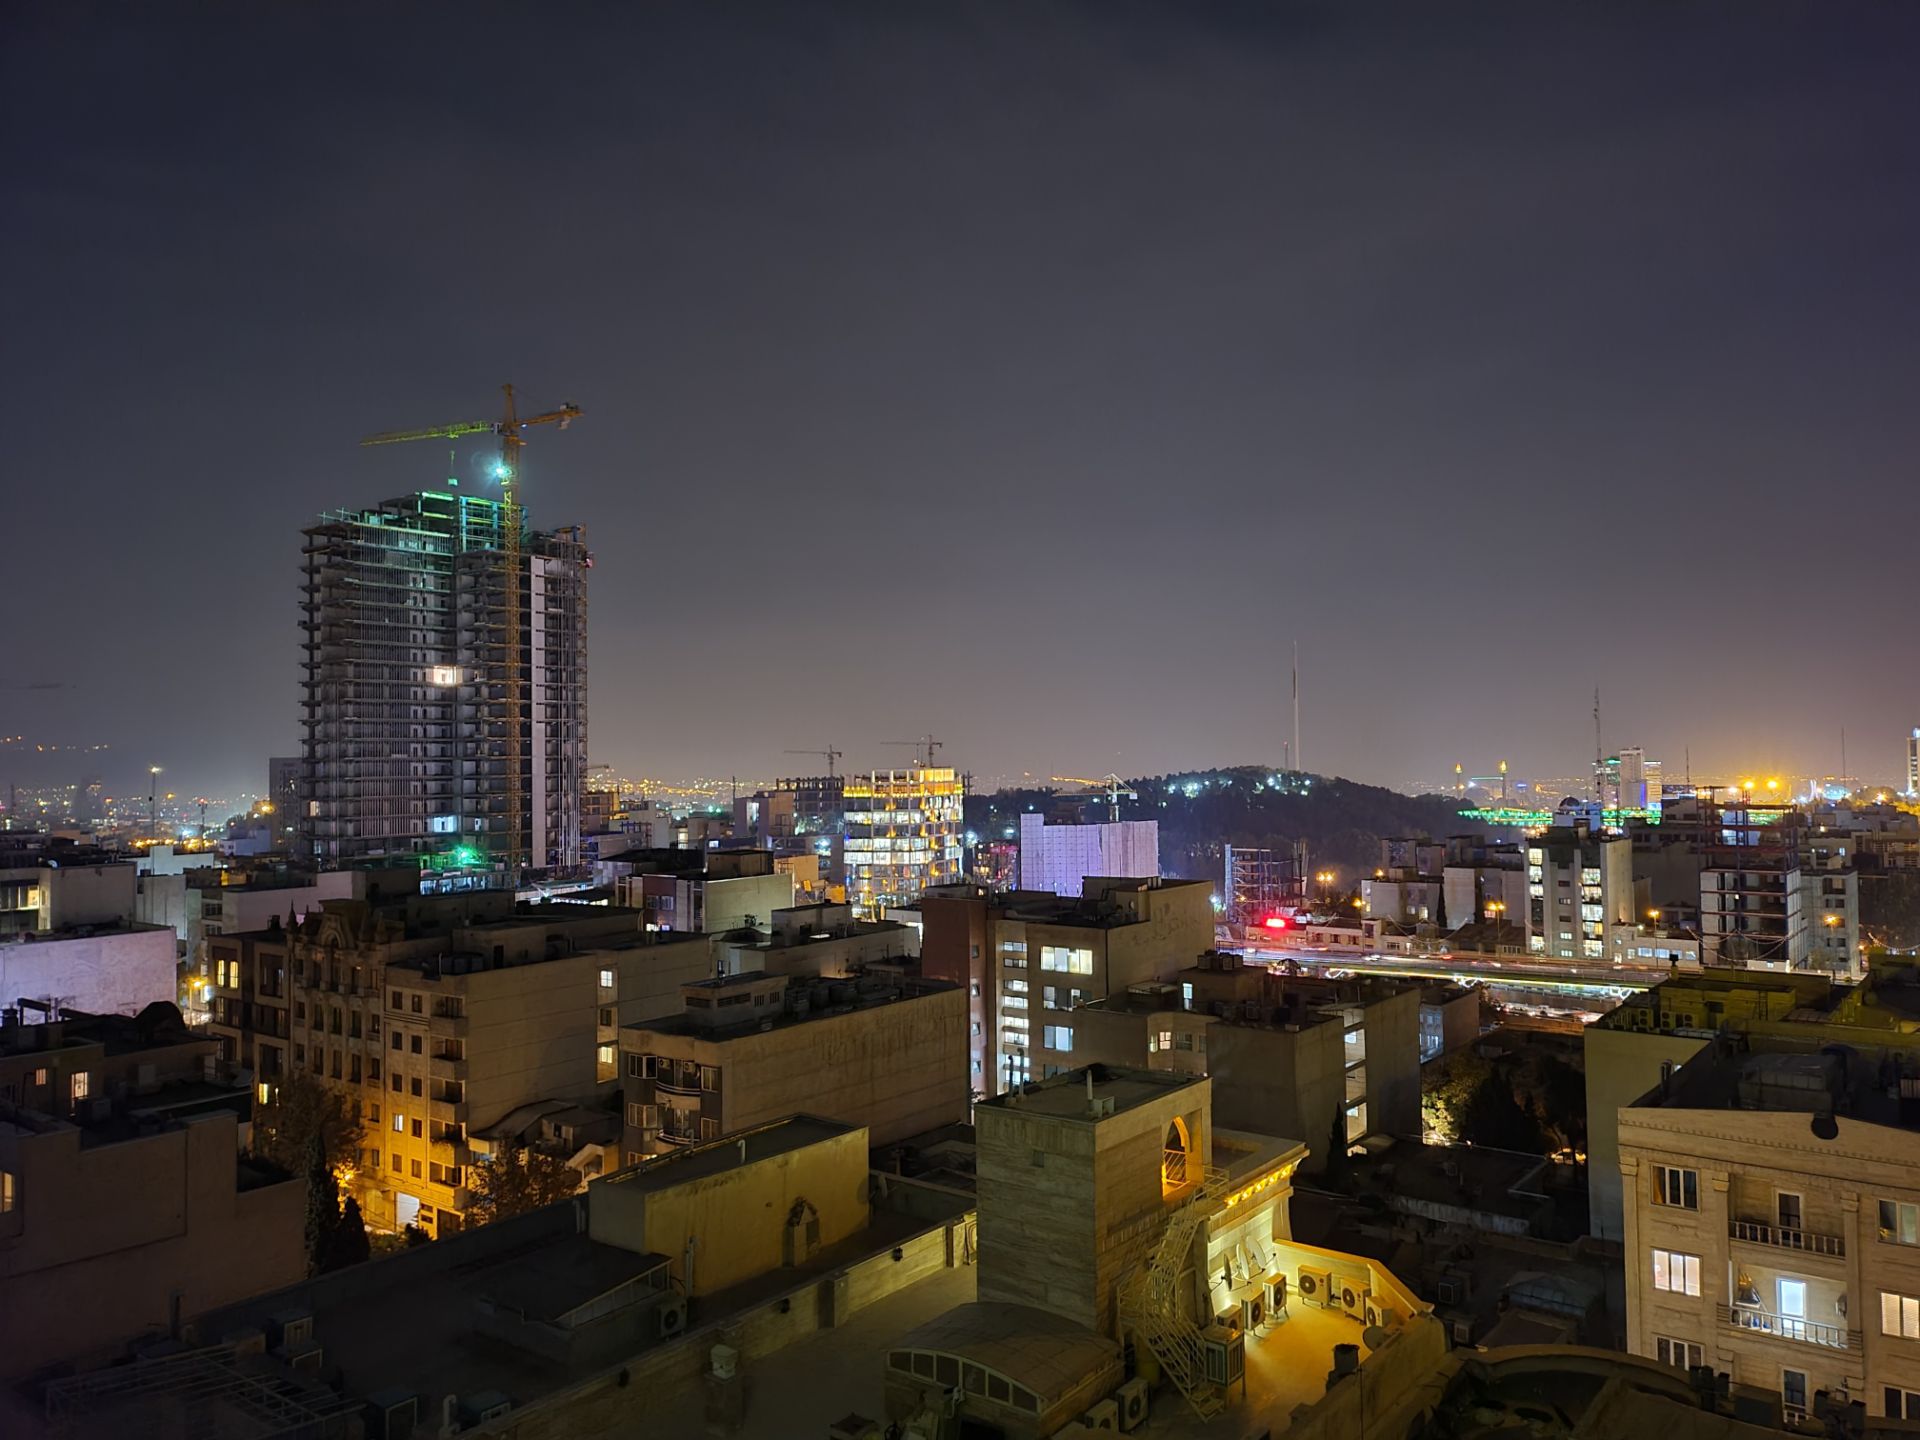 نمونه عکس دوربین واید گلکسی زد فولد ۲ در تاریکی - ساختمان های خیابان جردن تهران